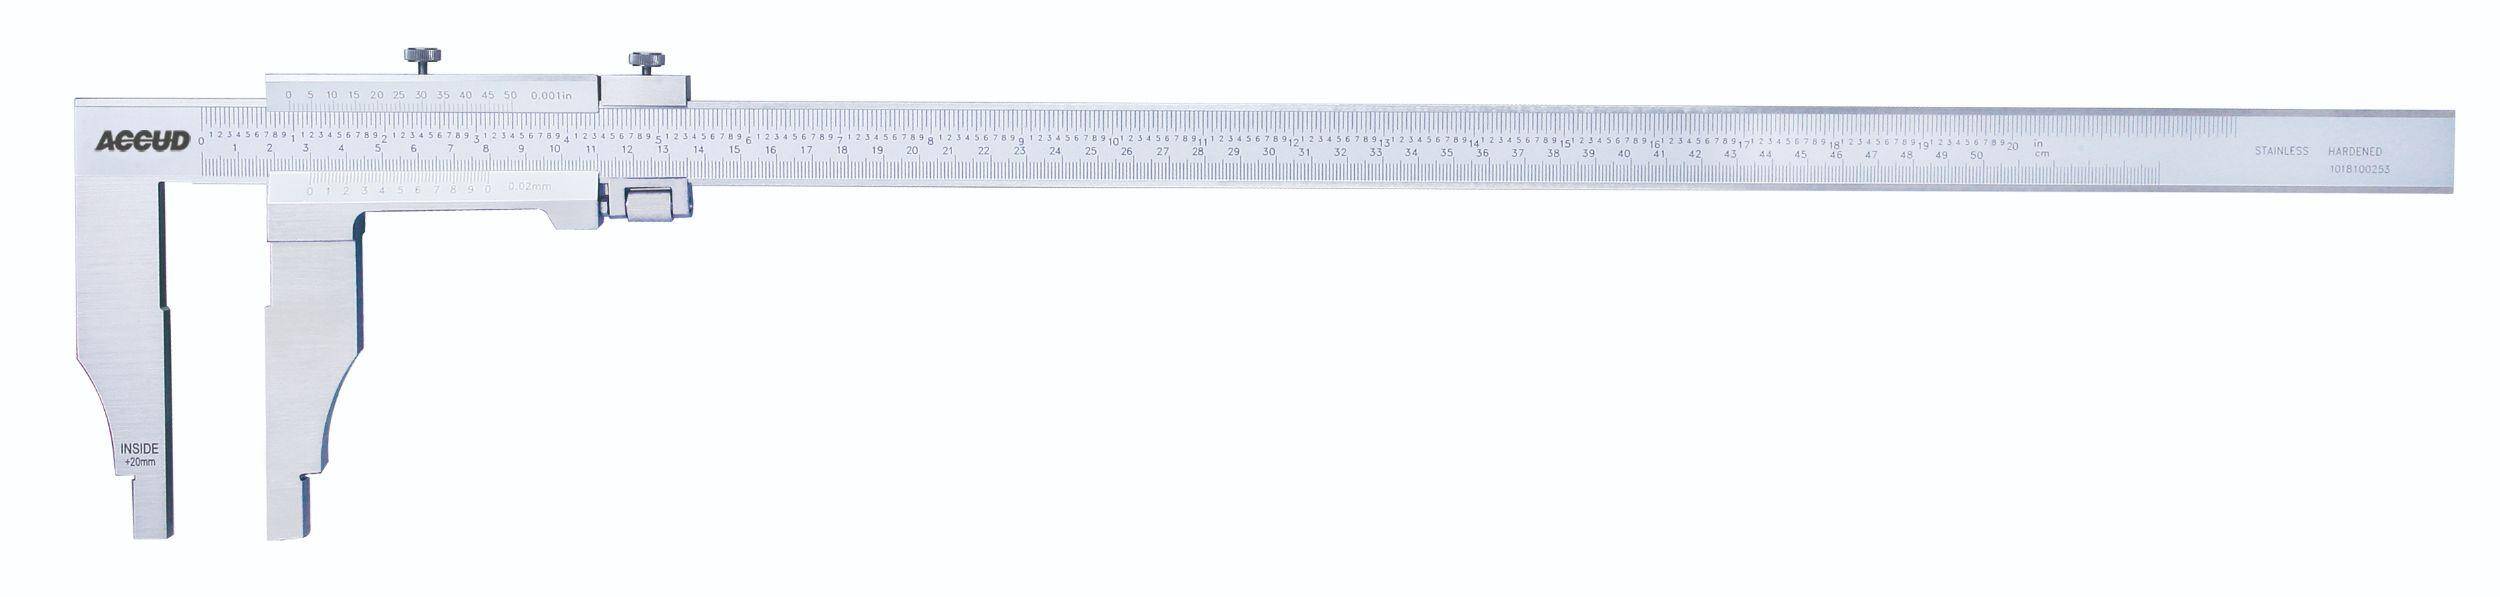 ACCUD suwmiarka analogowa 200/0.02 mm jednostronna długość szczęk 100 mm 128-008-21